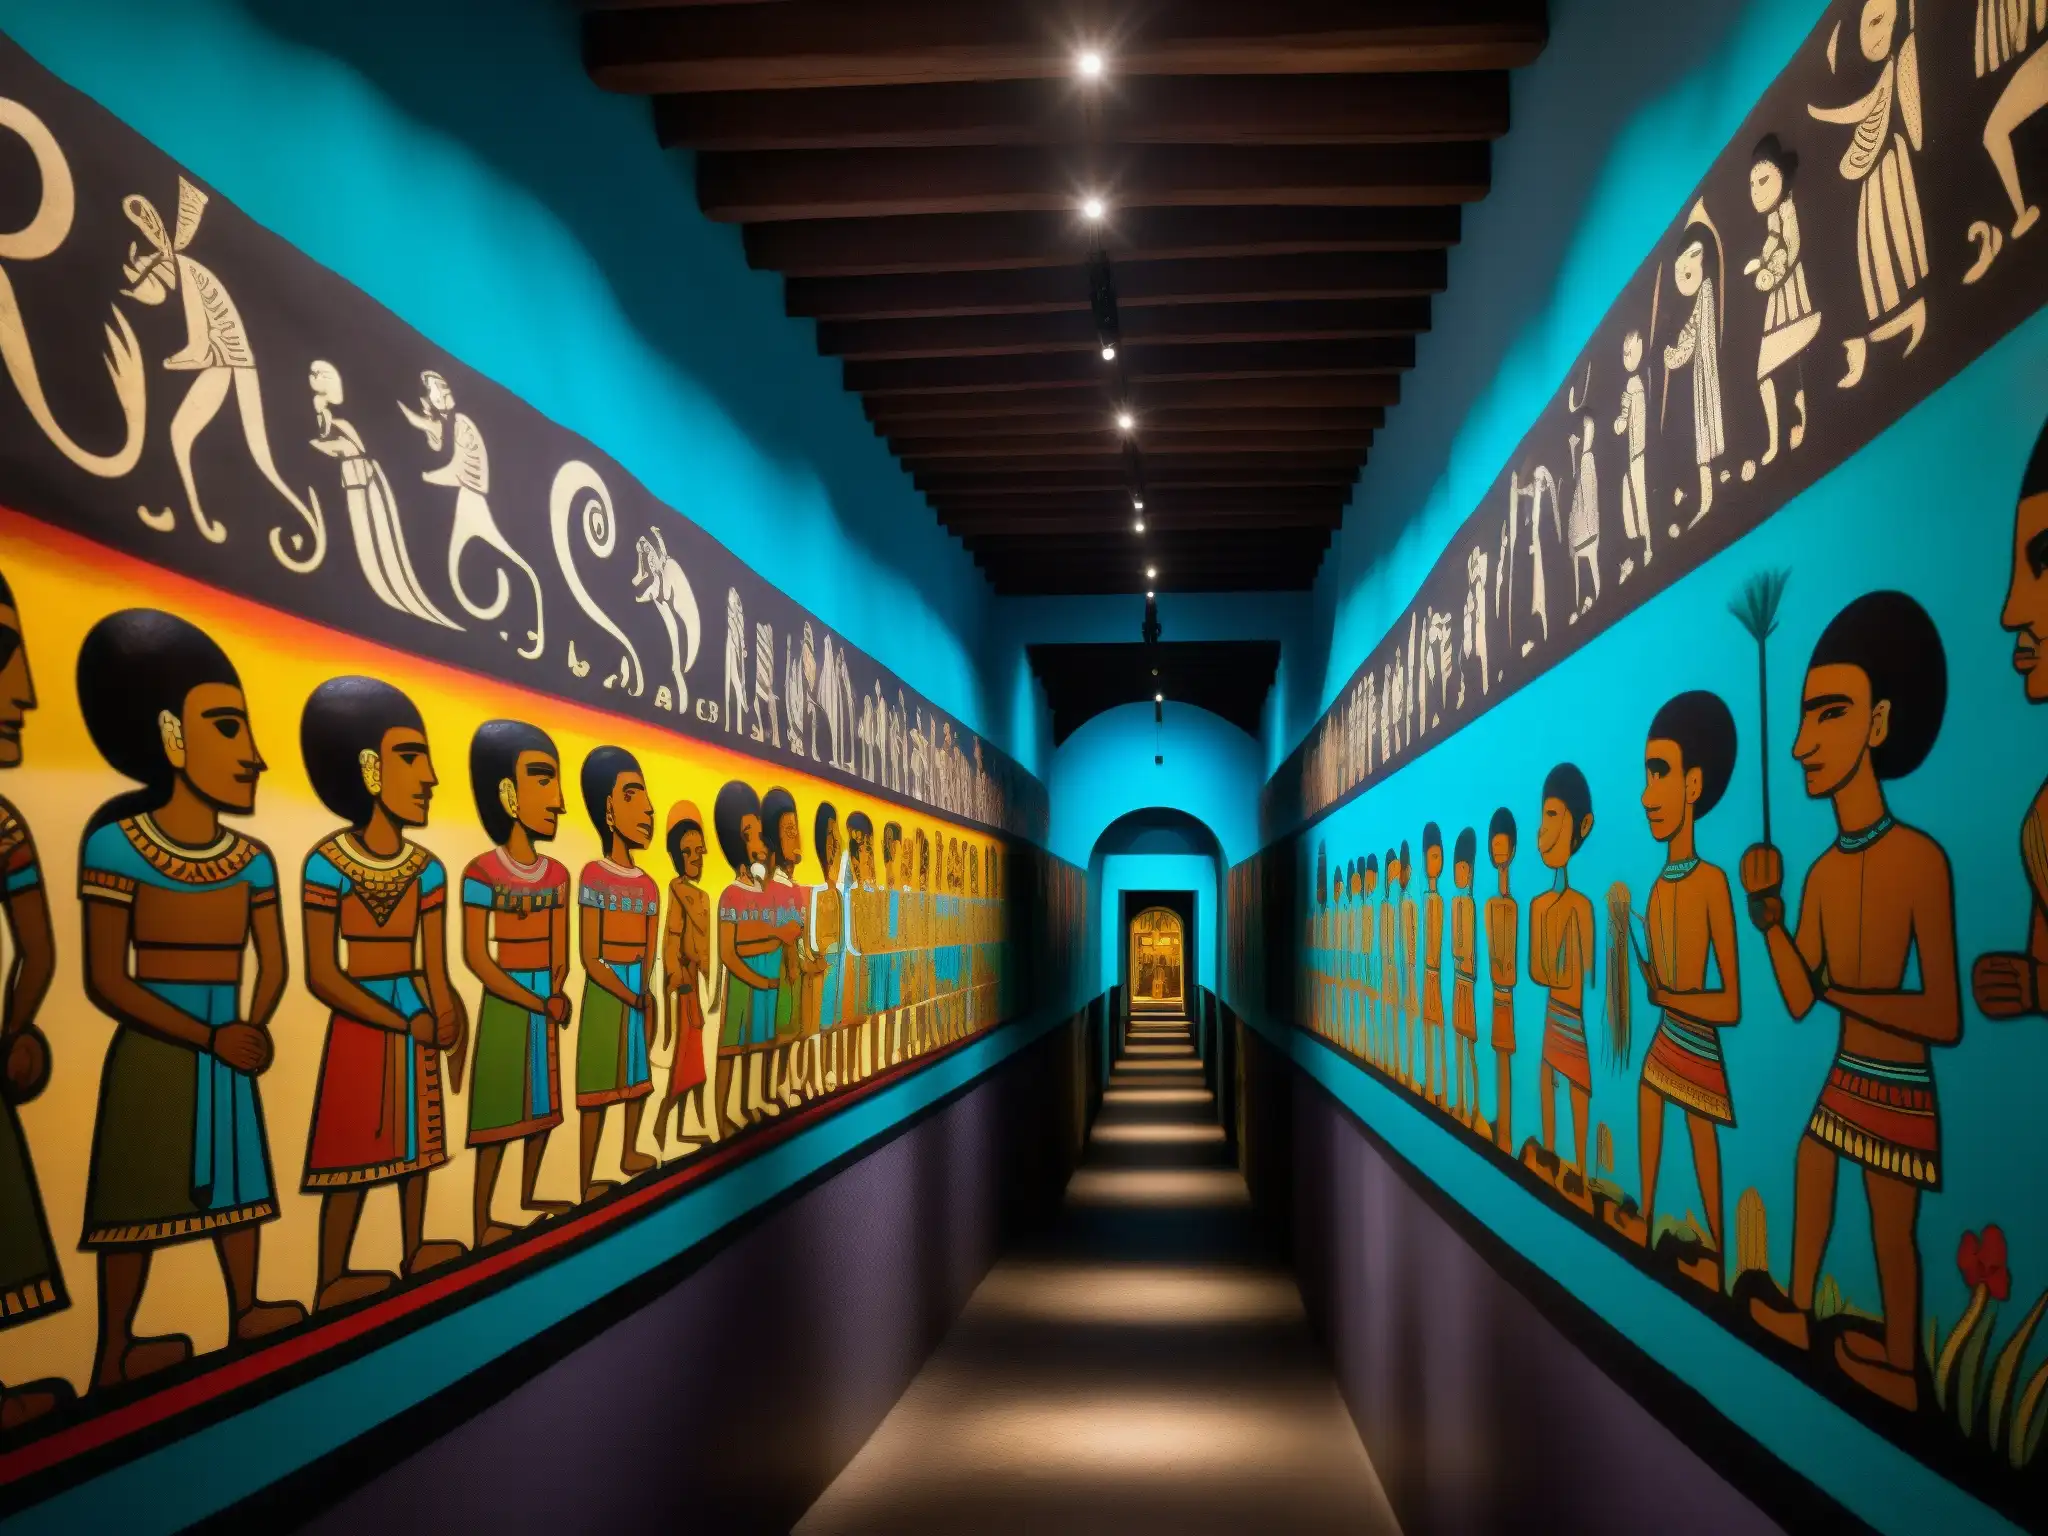 Detallada fotografía de los misteriosos murales en Mictlán, mostrando los mitos y leyendas urbanas en una atmósfera mística y ominosa